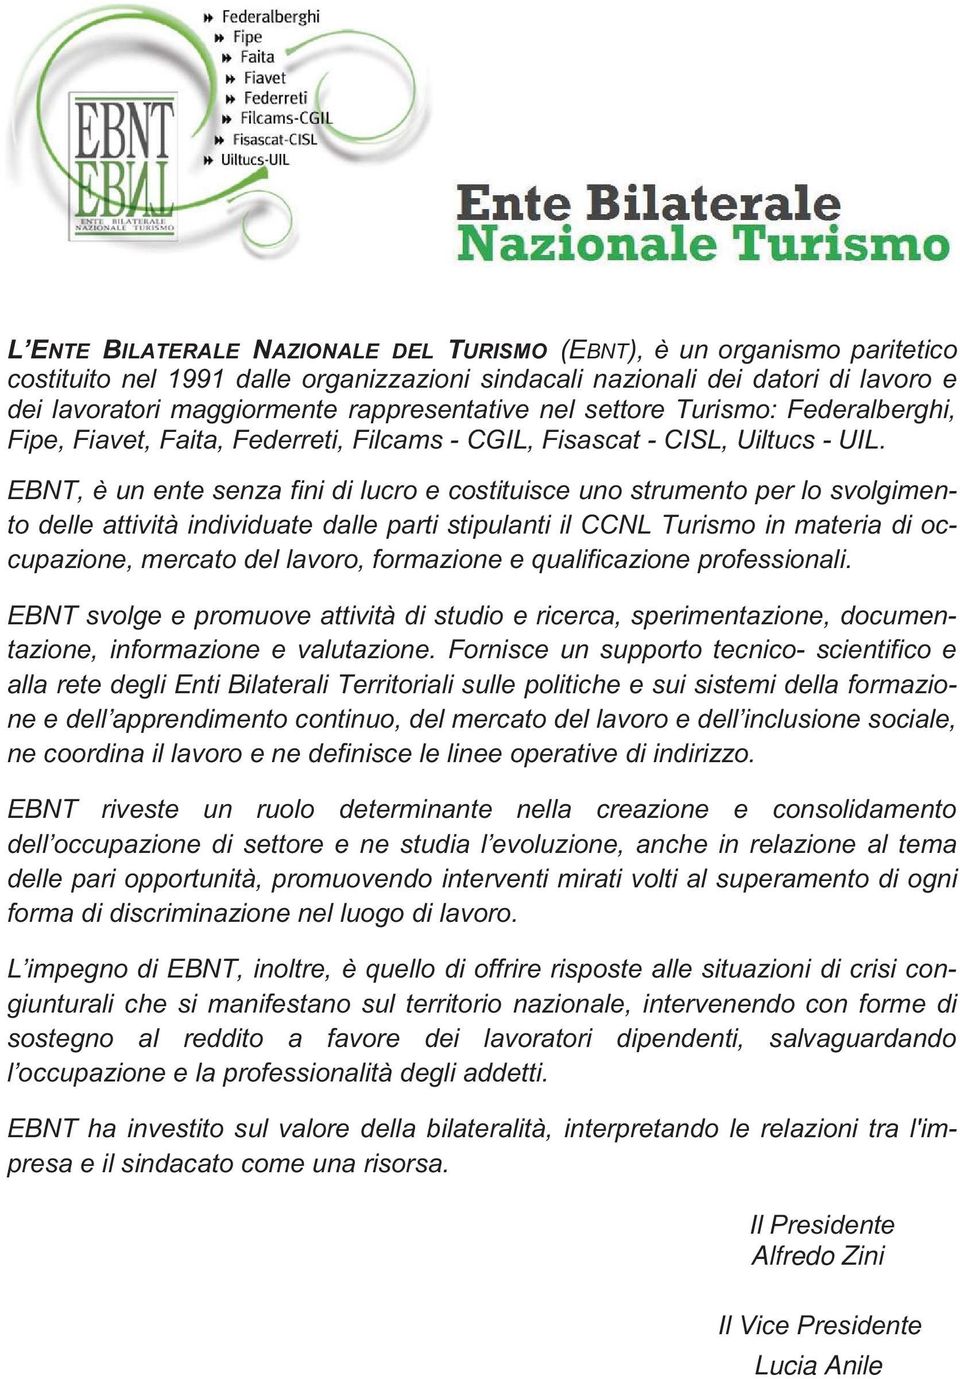 EBNT, è un ente senza fini di lucro e costituisce uno strumento per lo svolgimento delle attività individuate dalle parti stipulanti il CCNL Turismo in materia di occupazione, mercato del lavoro,